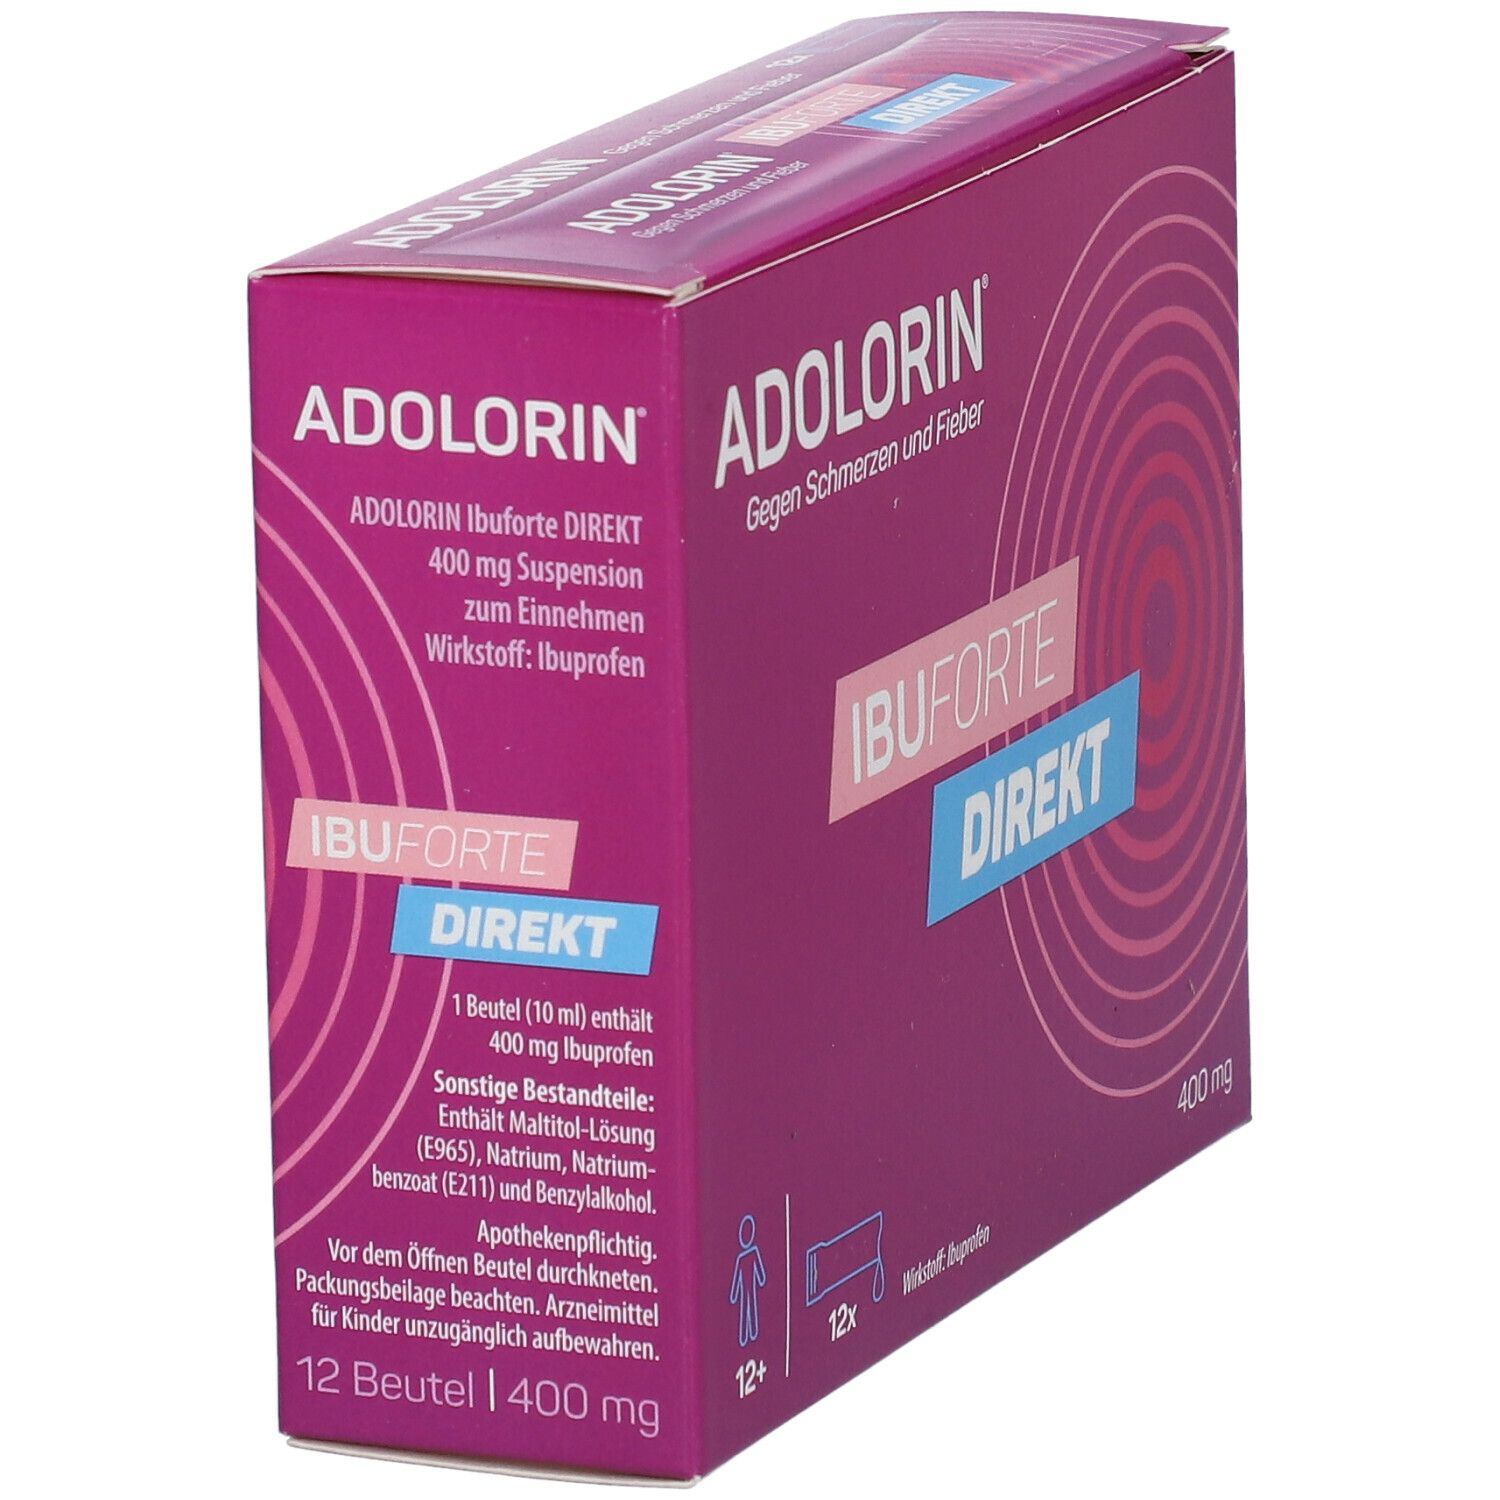 NICA Apotheke - NEUES PRODUKT - Adolorin / Adolorini Sticks